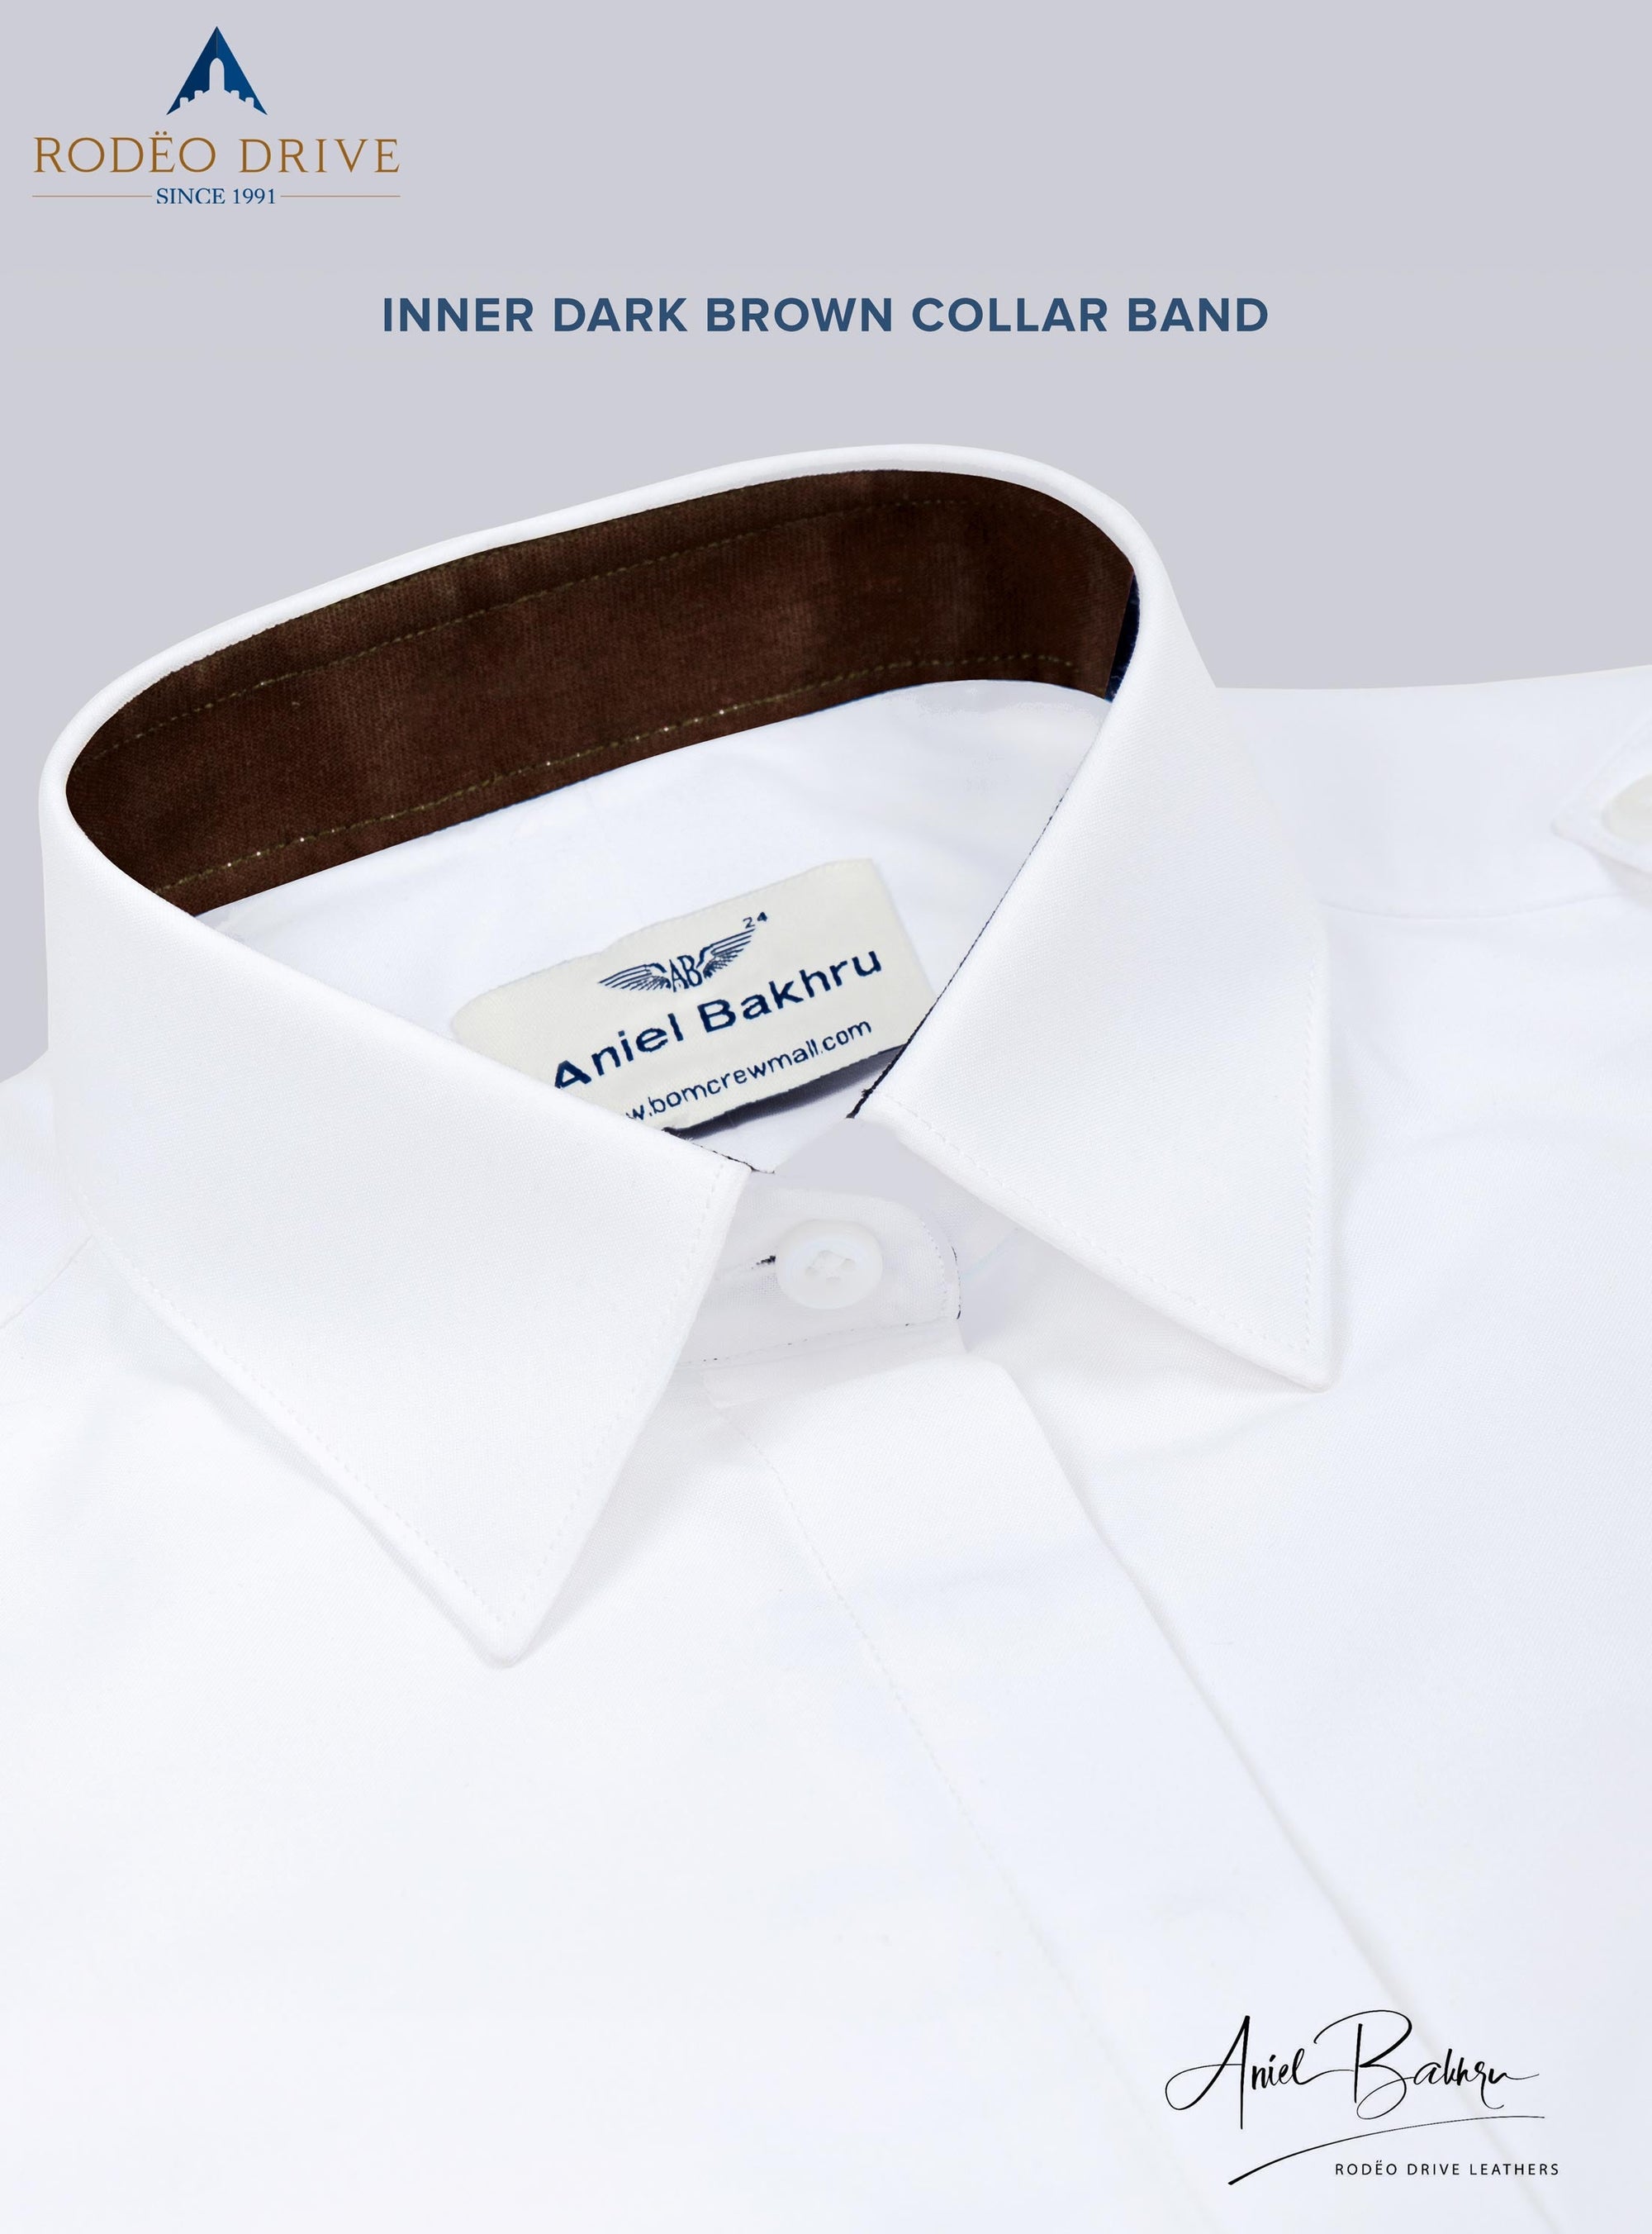 image depicting inner dark brown collar band of Custom Pilot Shirt Men